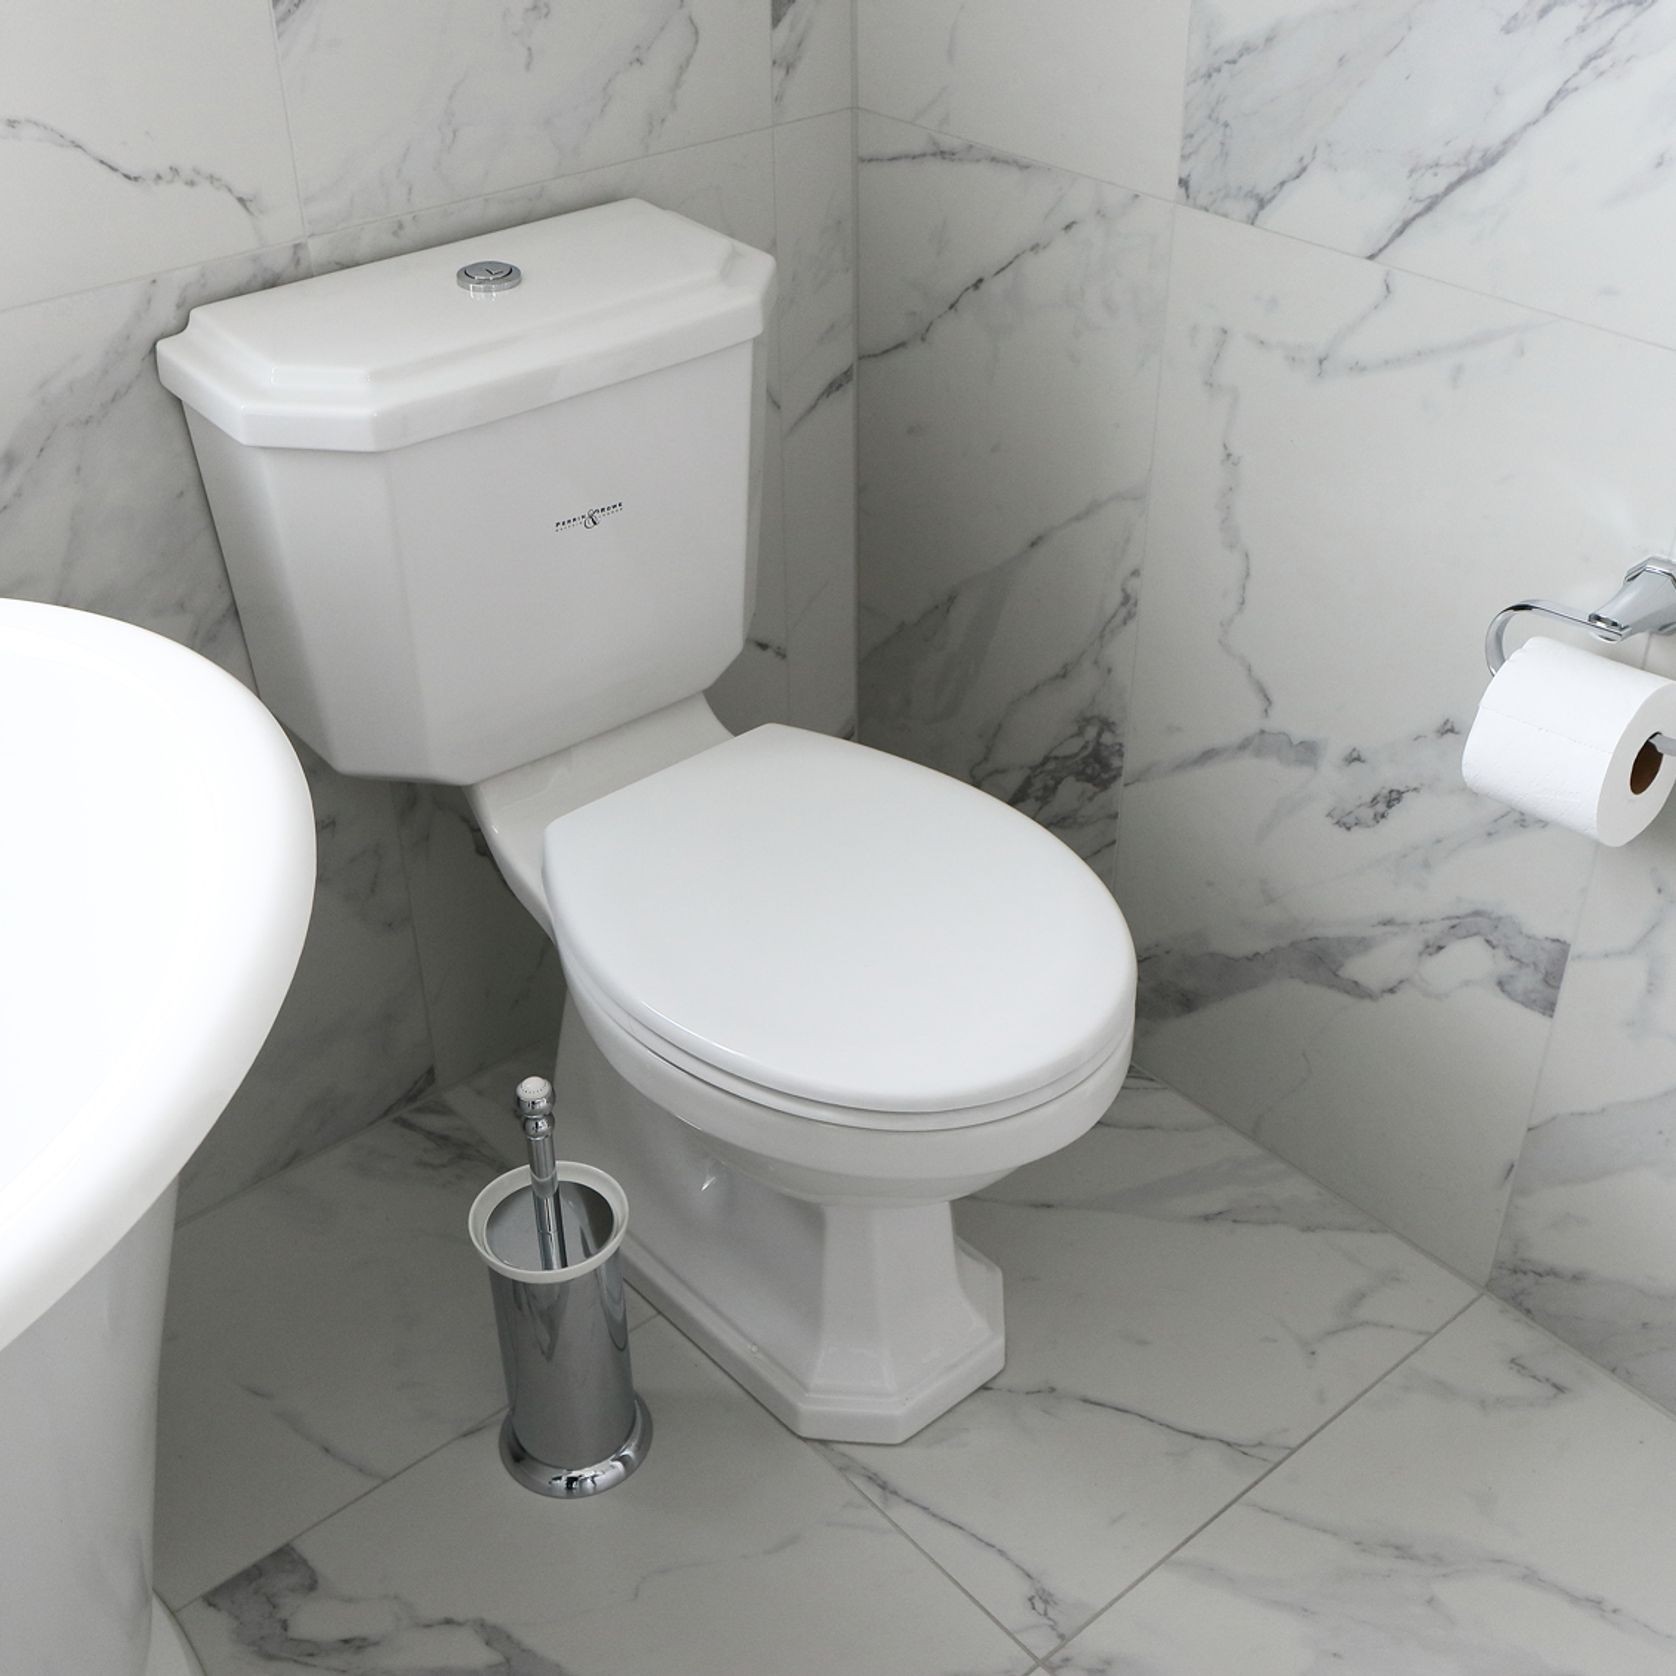 Perrin & Rowe Freestanding Toilet brush gallery detail image